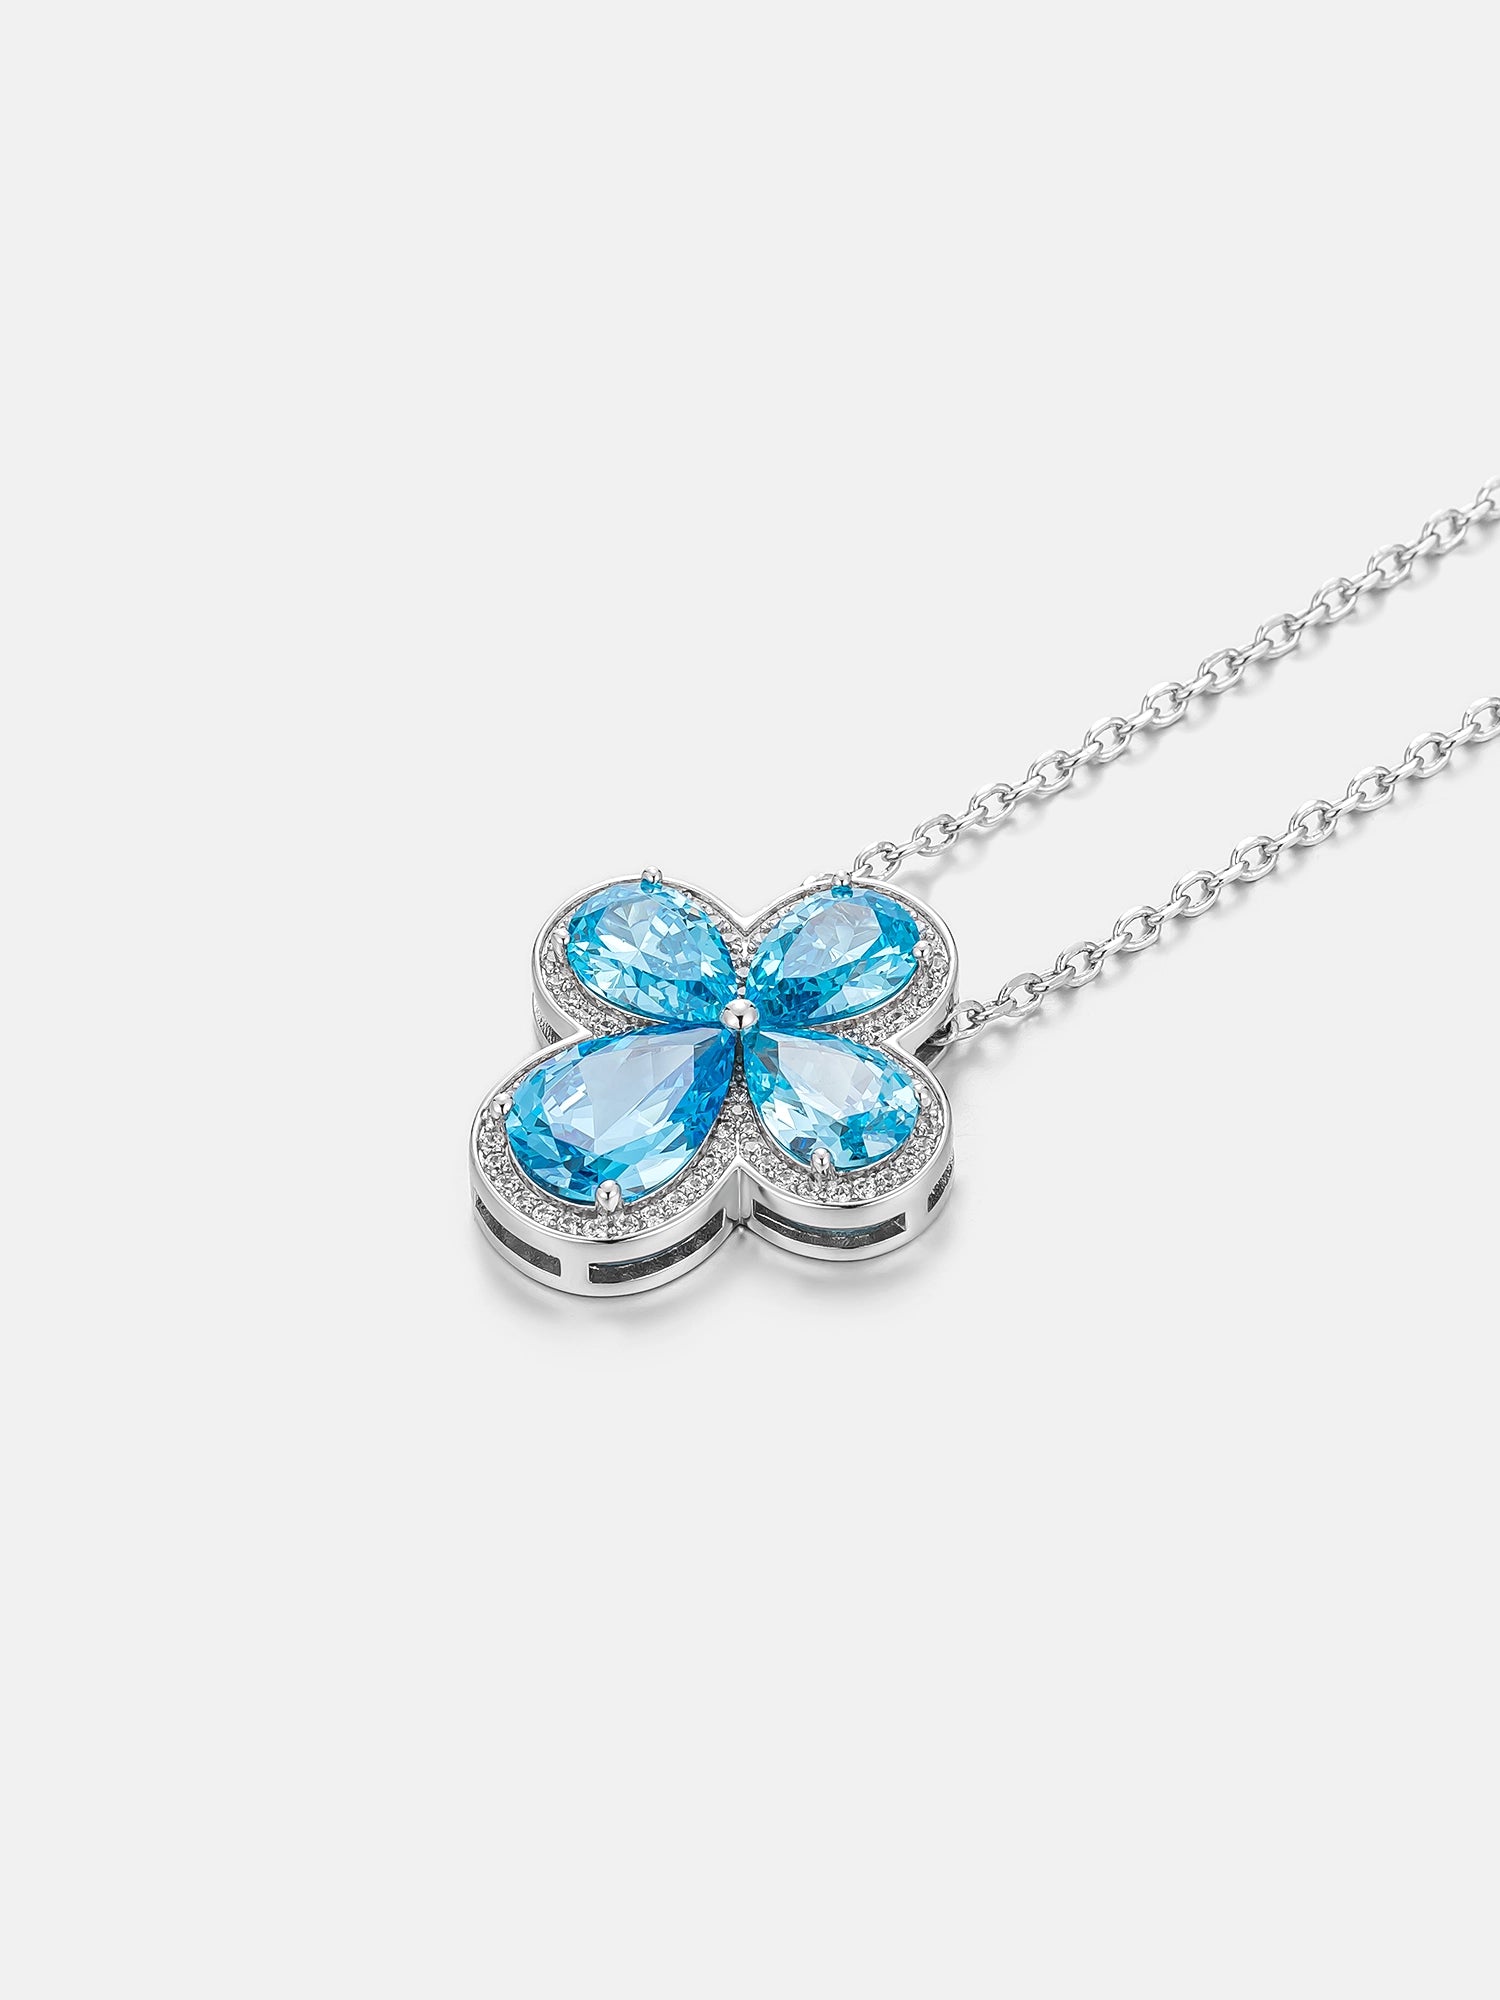 Blue Gemstone Moissanite Four Leaf Clover Adjustable Necklace